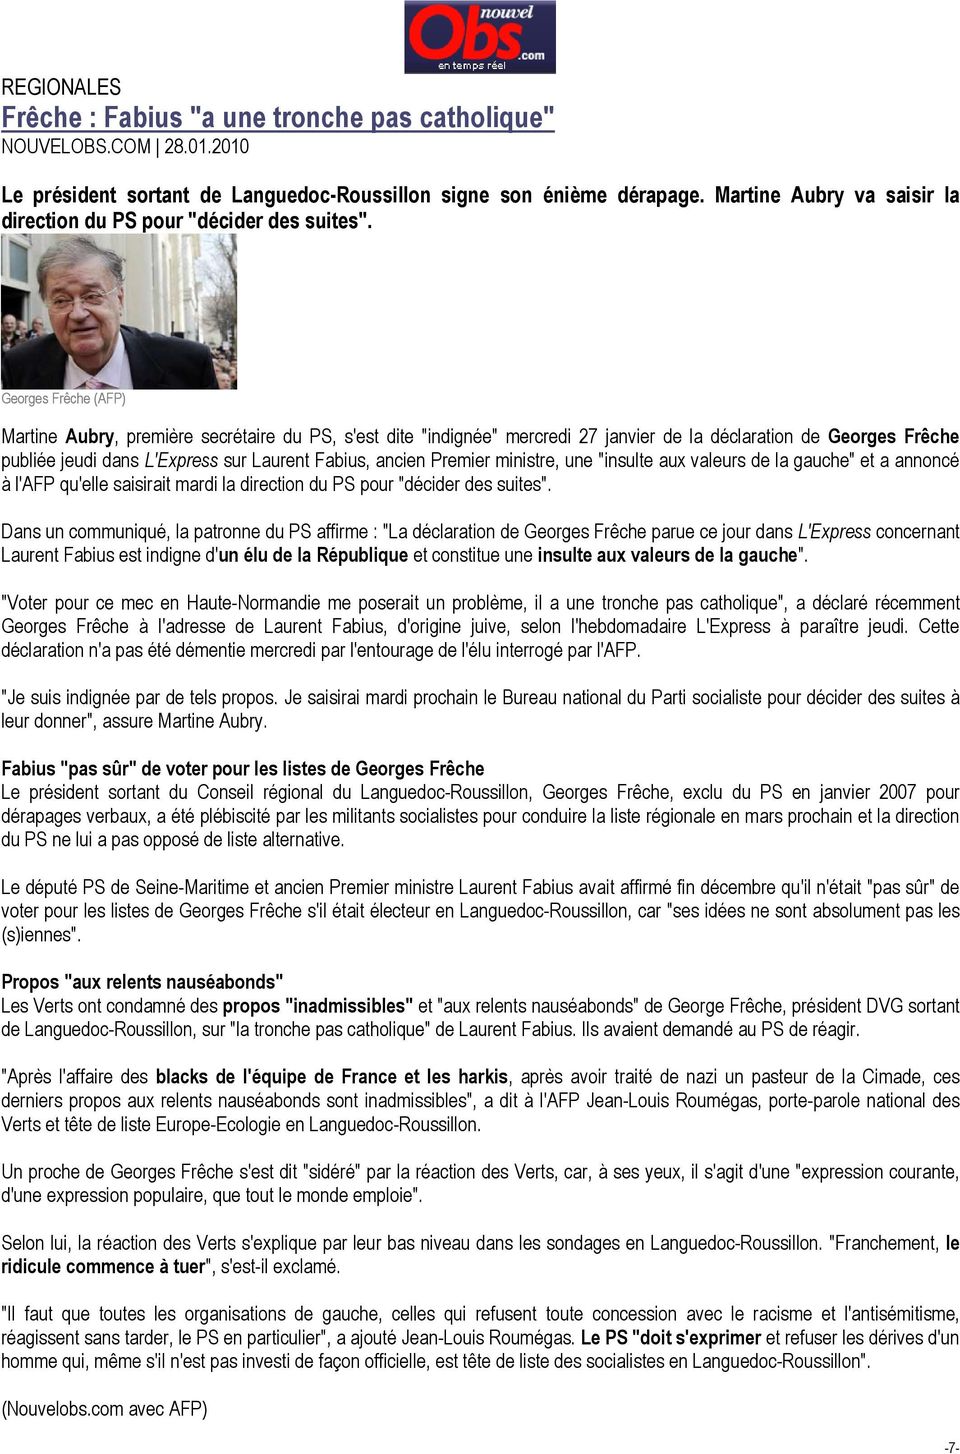 Georges Frêche (AFP) Martine Aubry, première secrétaire du PS, s'est dite "indignée" mercredi 27 janvier de la déclaration de Georges Frêche publiée jeudi dans L'Express sur Laurent Fabius, ancien